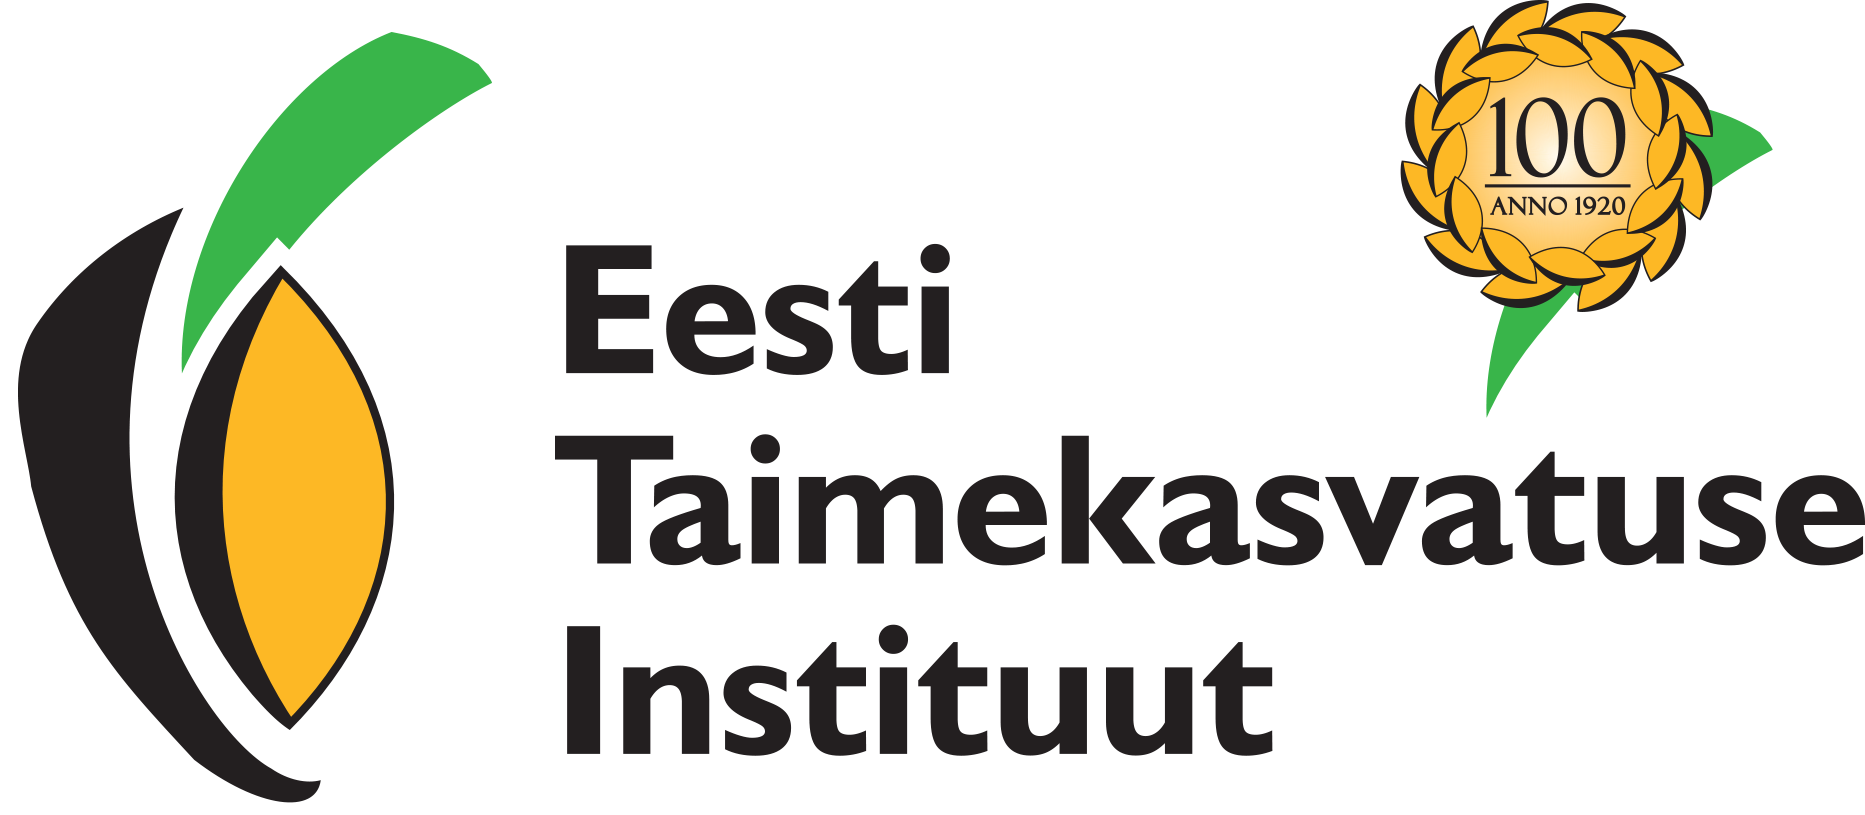 Eesti Taimekasvatuse Instituut